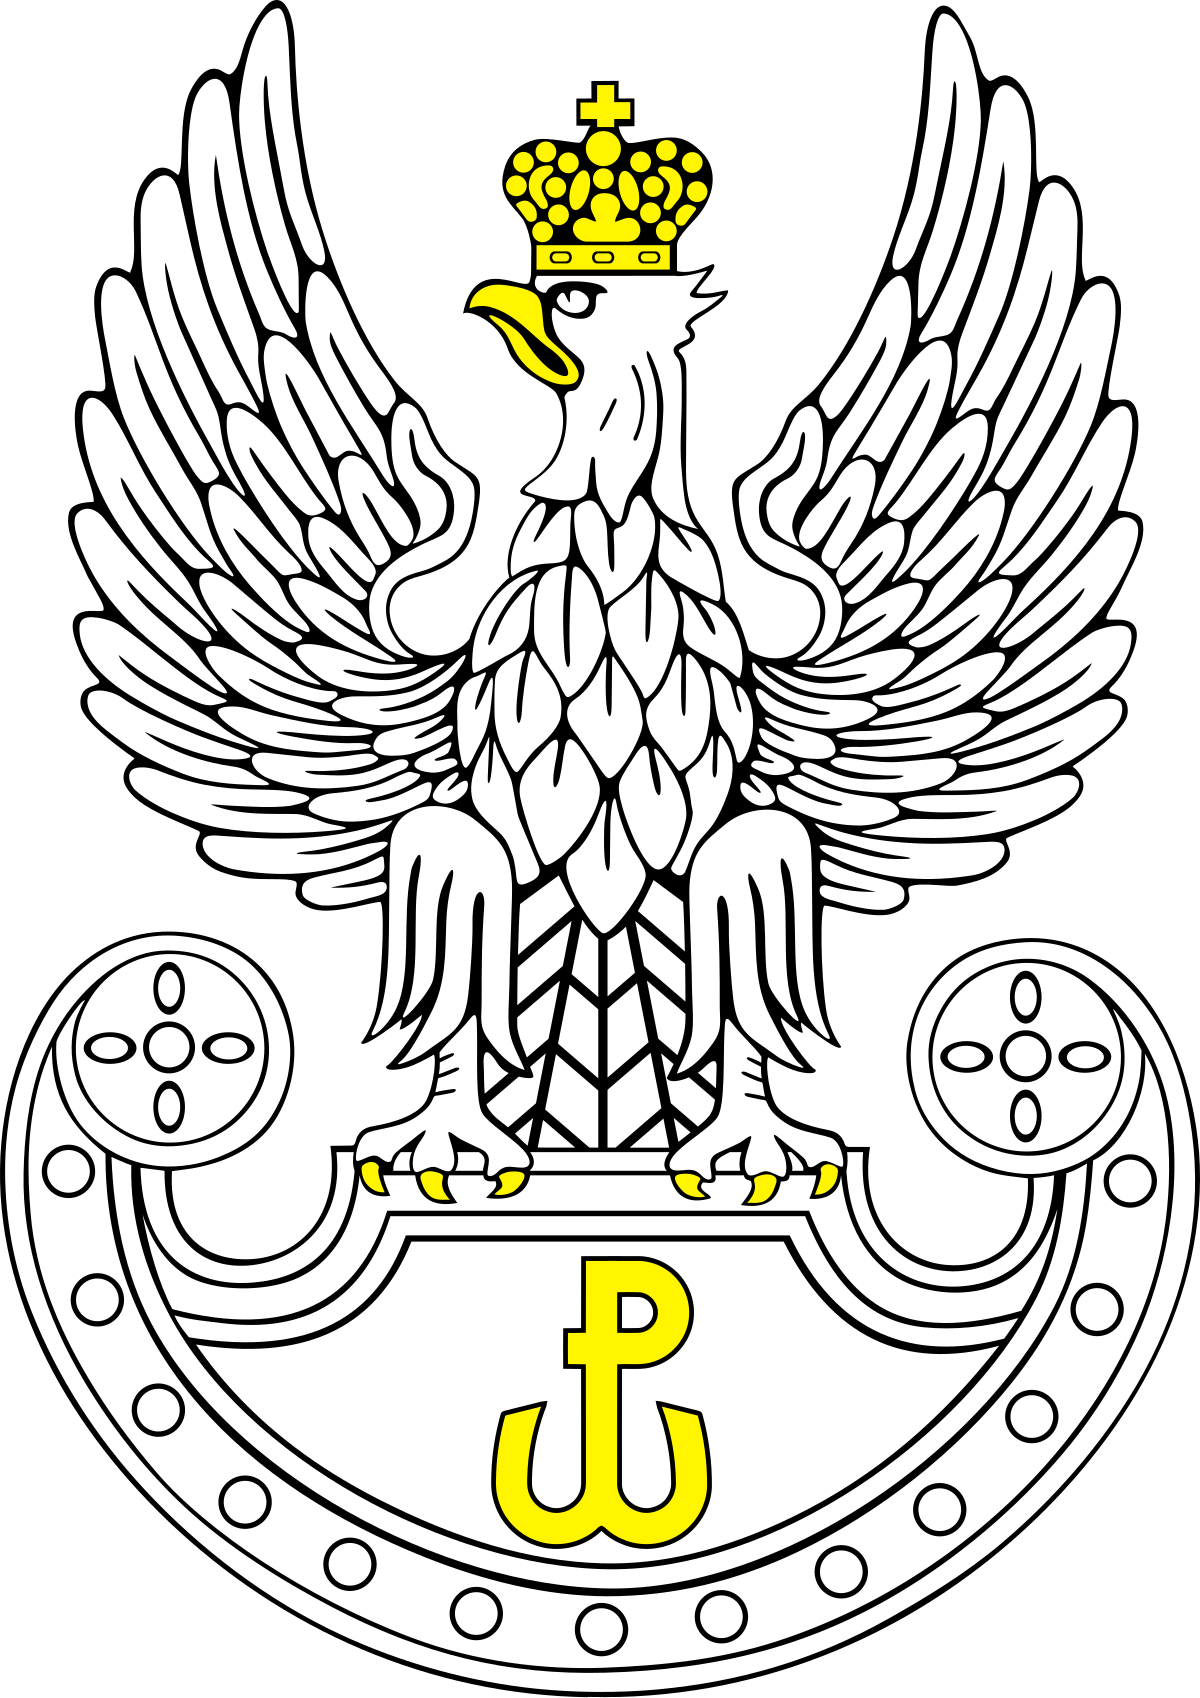 Military eagle - Wikipedia